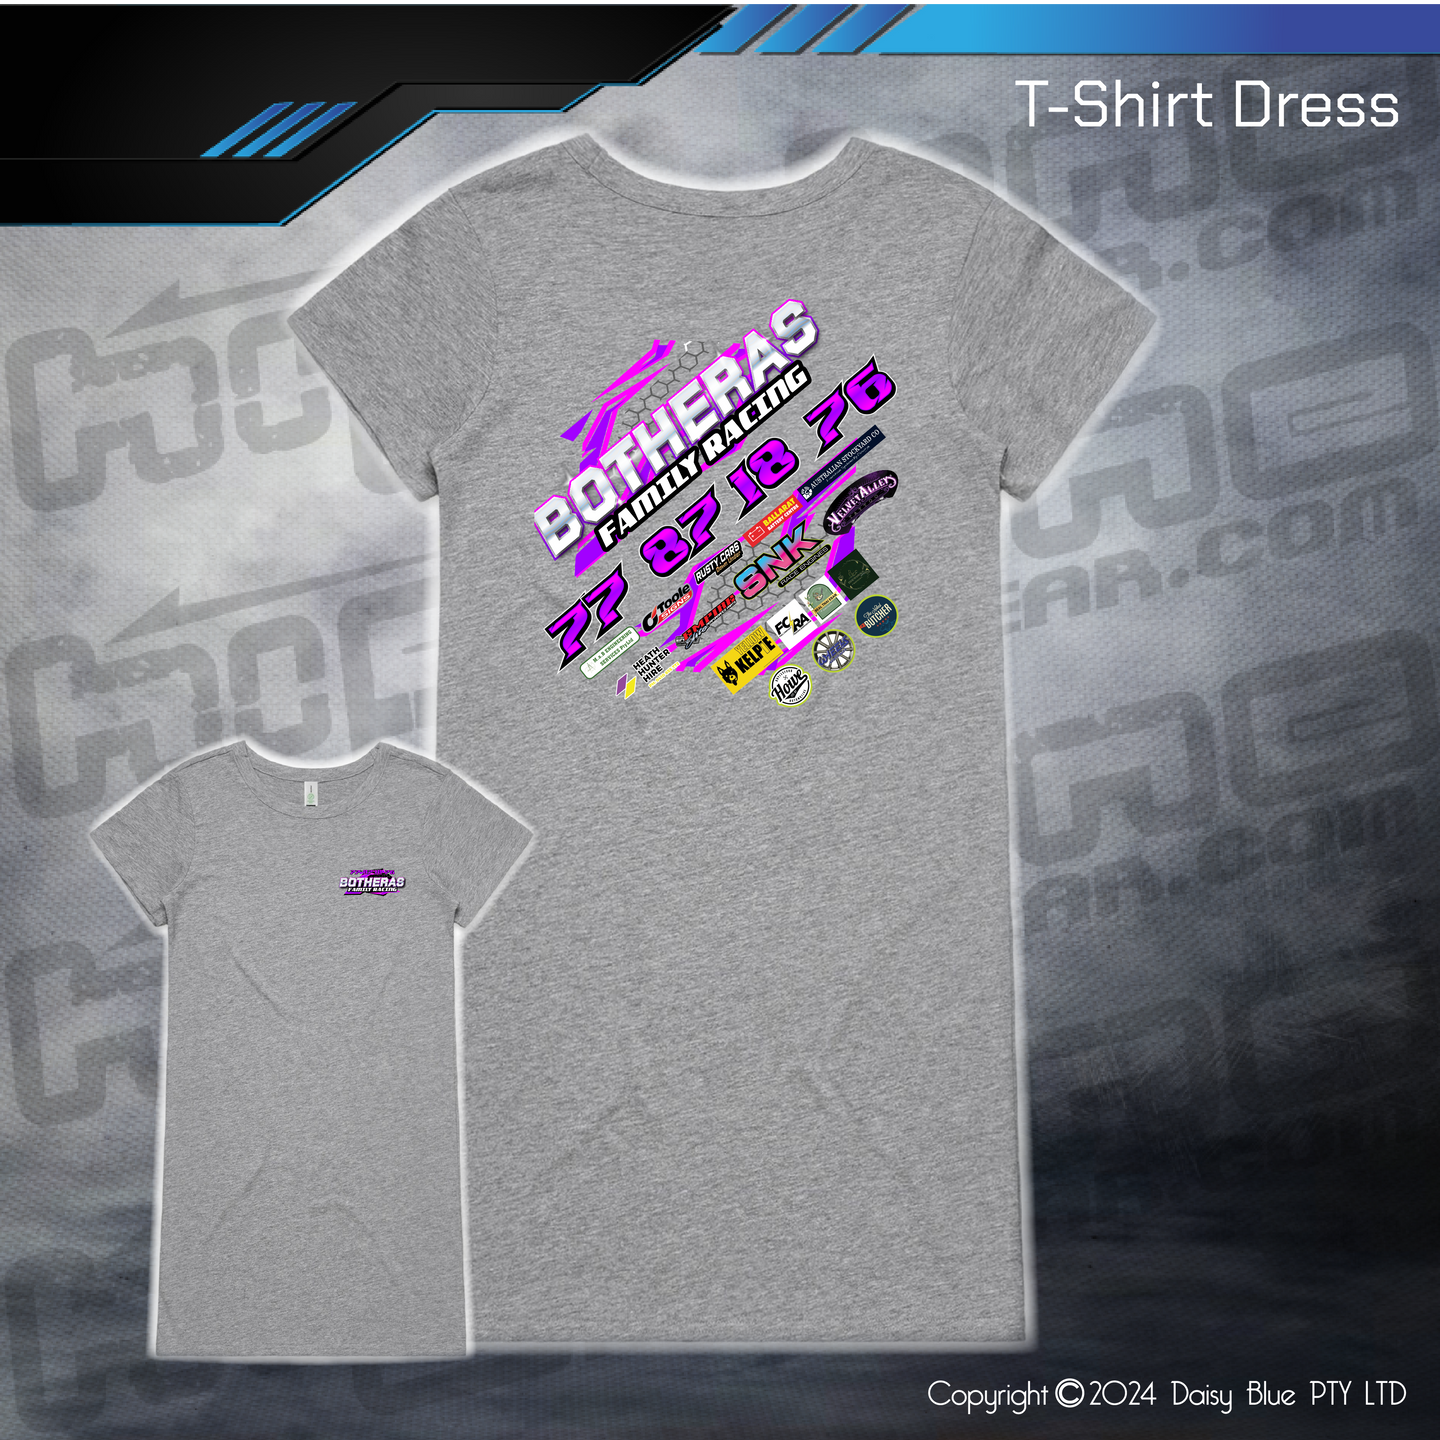 T-Shirt Dress - Botheras Family Racing